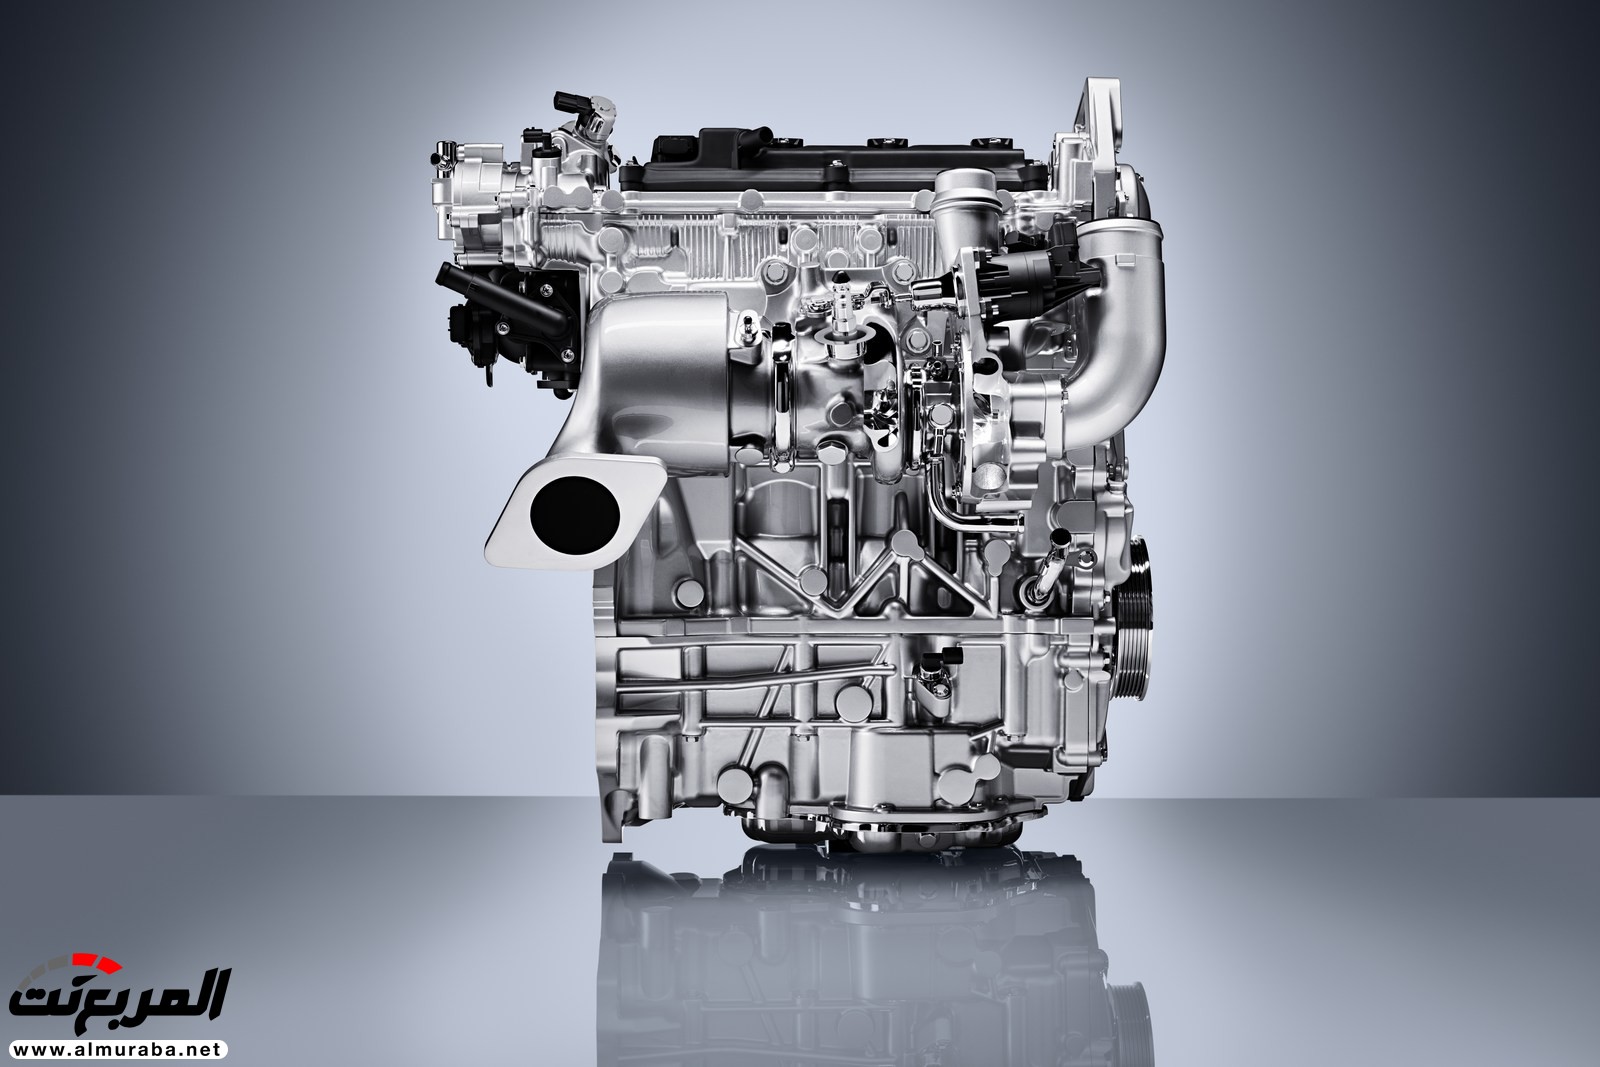 إنفينيتي QX50 الجديدة كلياً 2019 تظهر رسمياً بمحرك هو الأكثر تطوراً 7